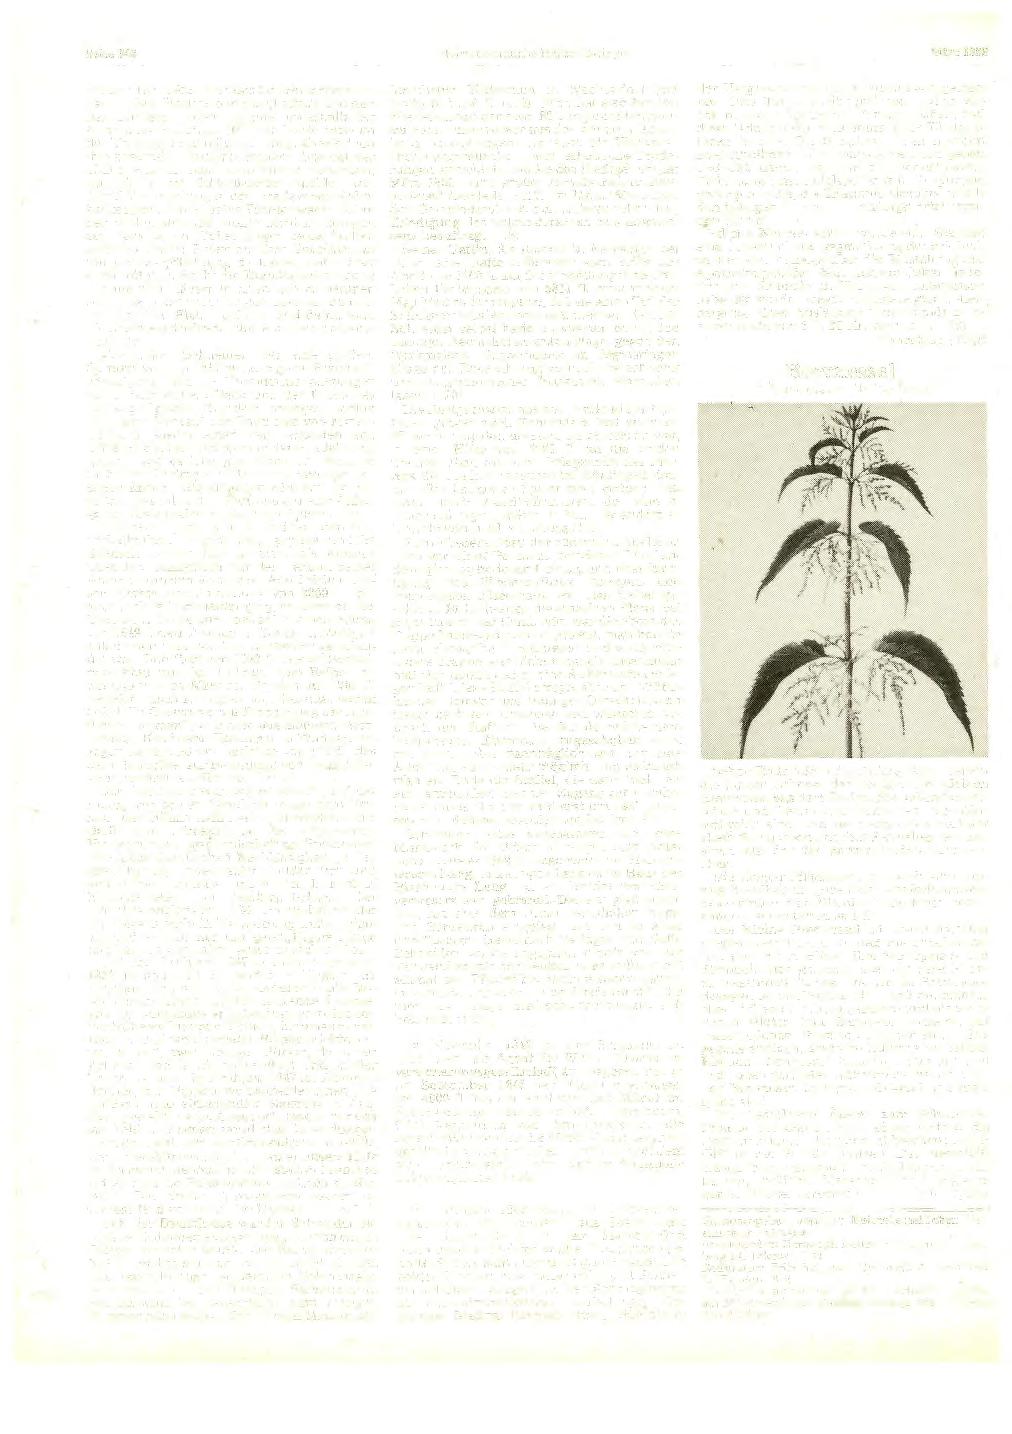 Seite 348 Heimatkundliehe Blätter Balingen März 1982 weitere Baupl ätze, den des Schuhmachers J 0 hann Adam B eck in der Kapell straße und den des Gürtlers Ludwig Speidei unterhalb der bisherigen